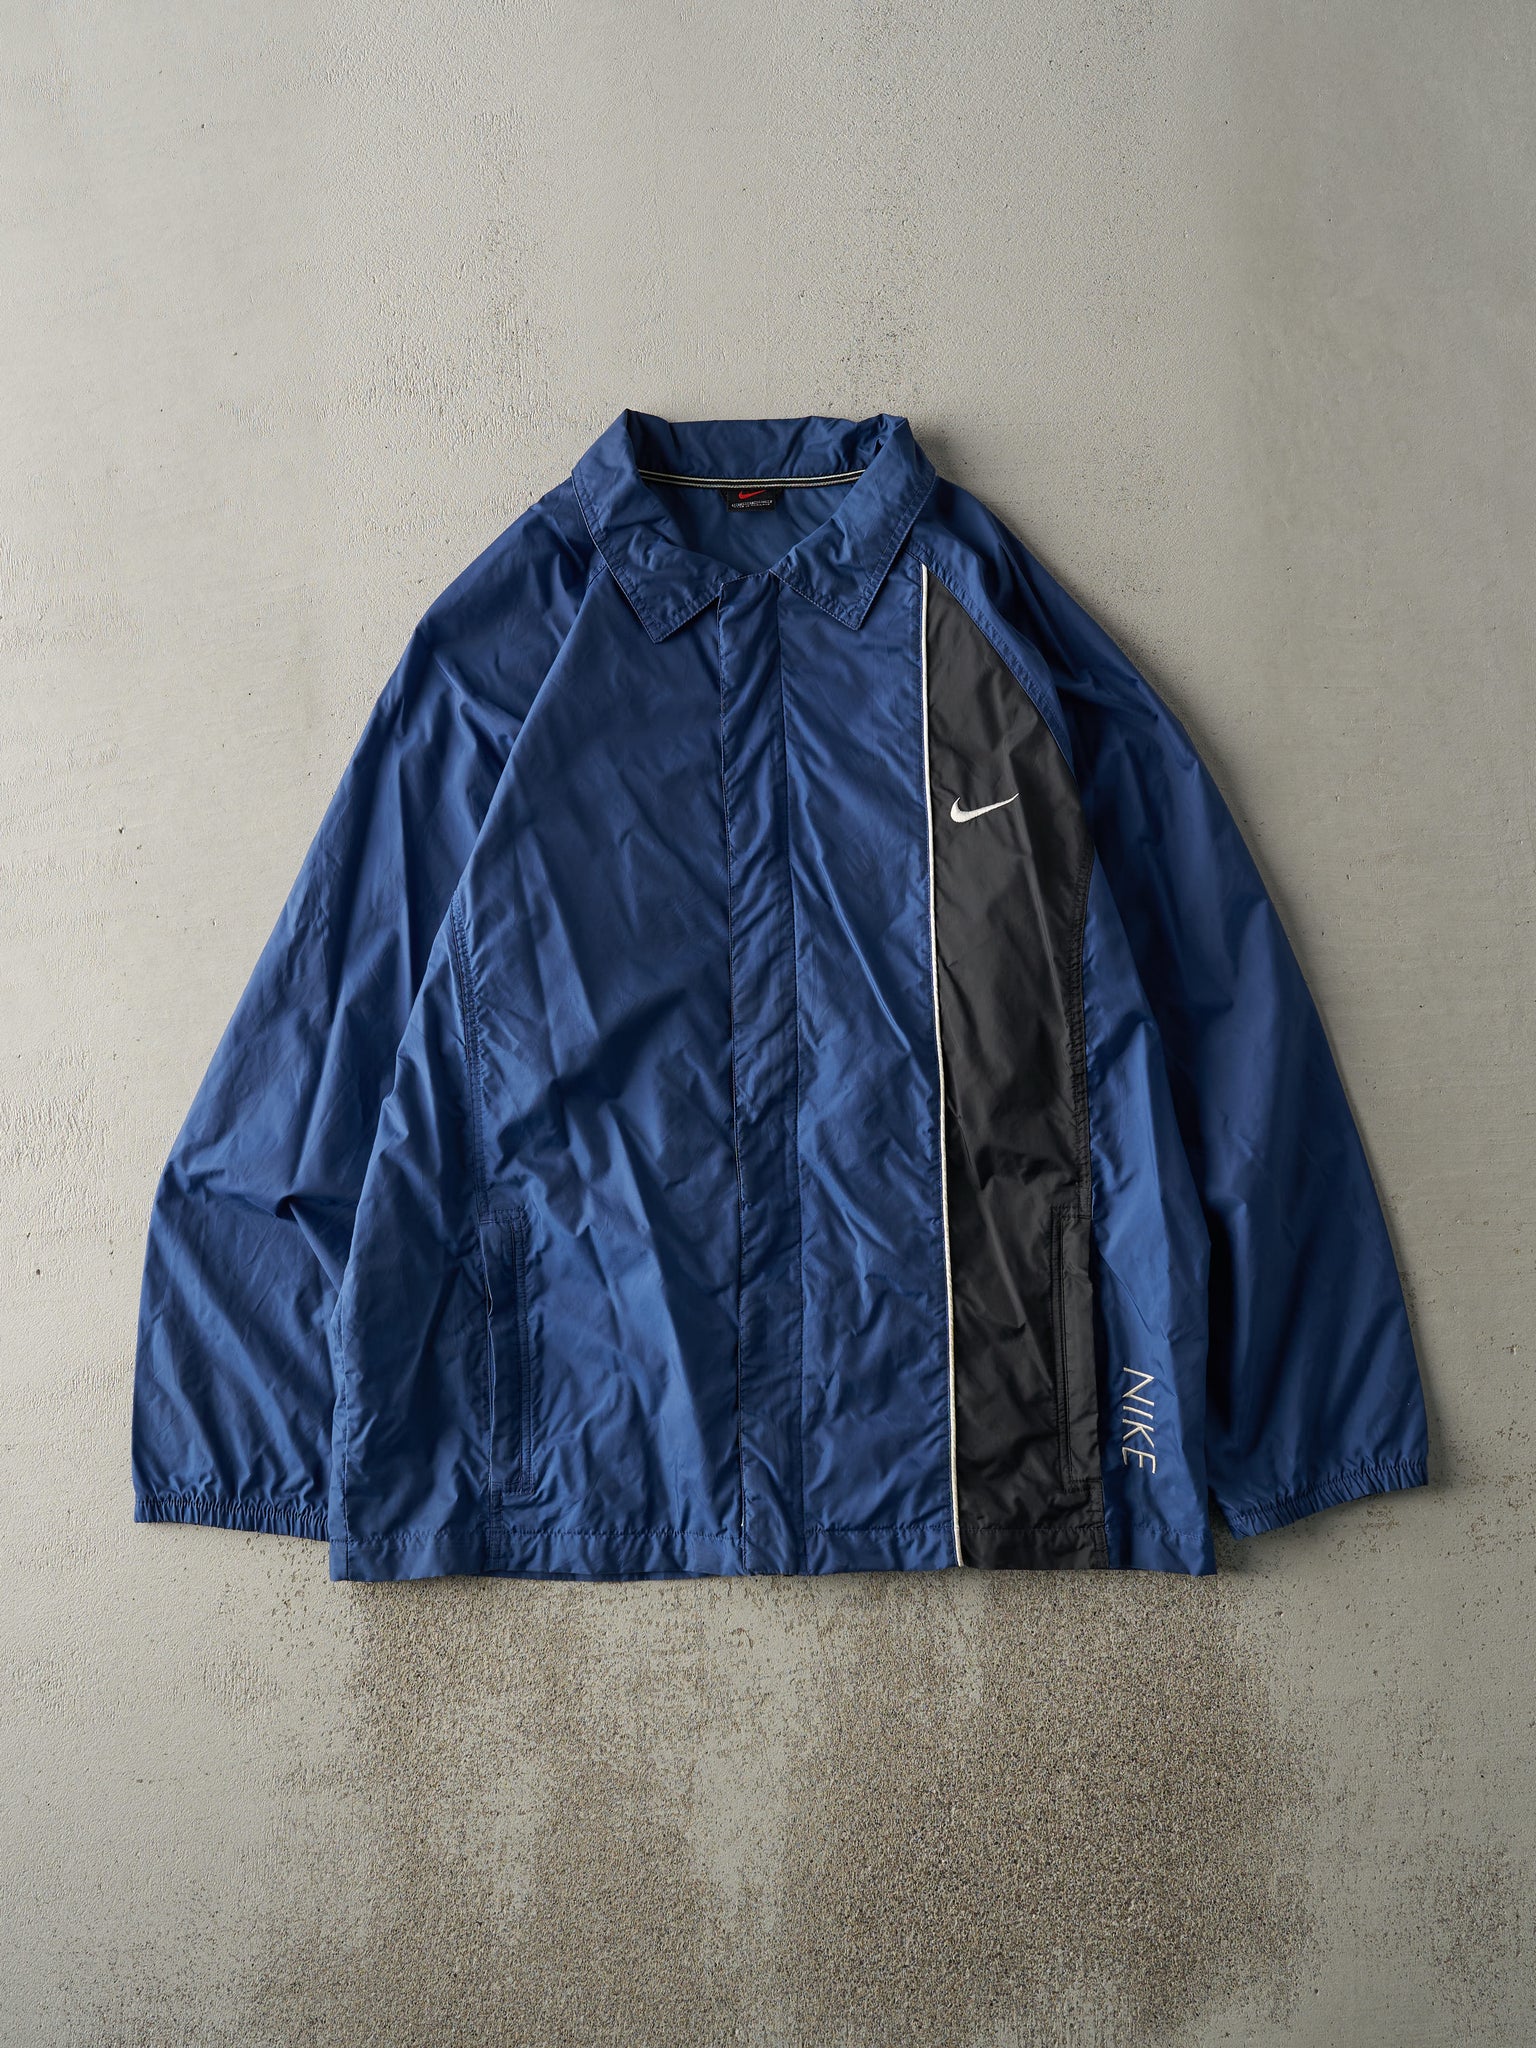 Vintage Y2K Navy Blue & Black Nike Zip Up Windbreaker Jacket (M)